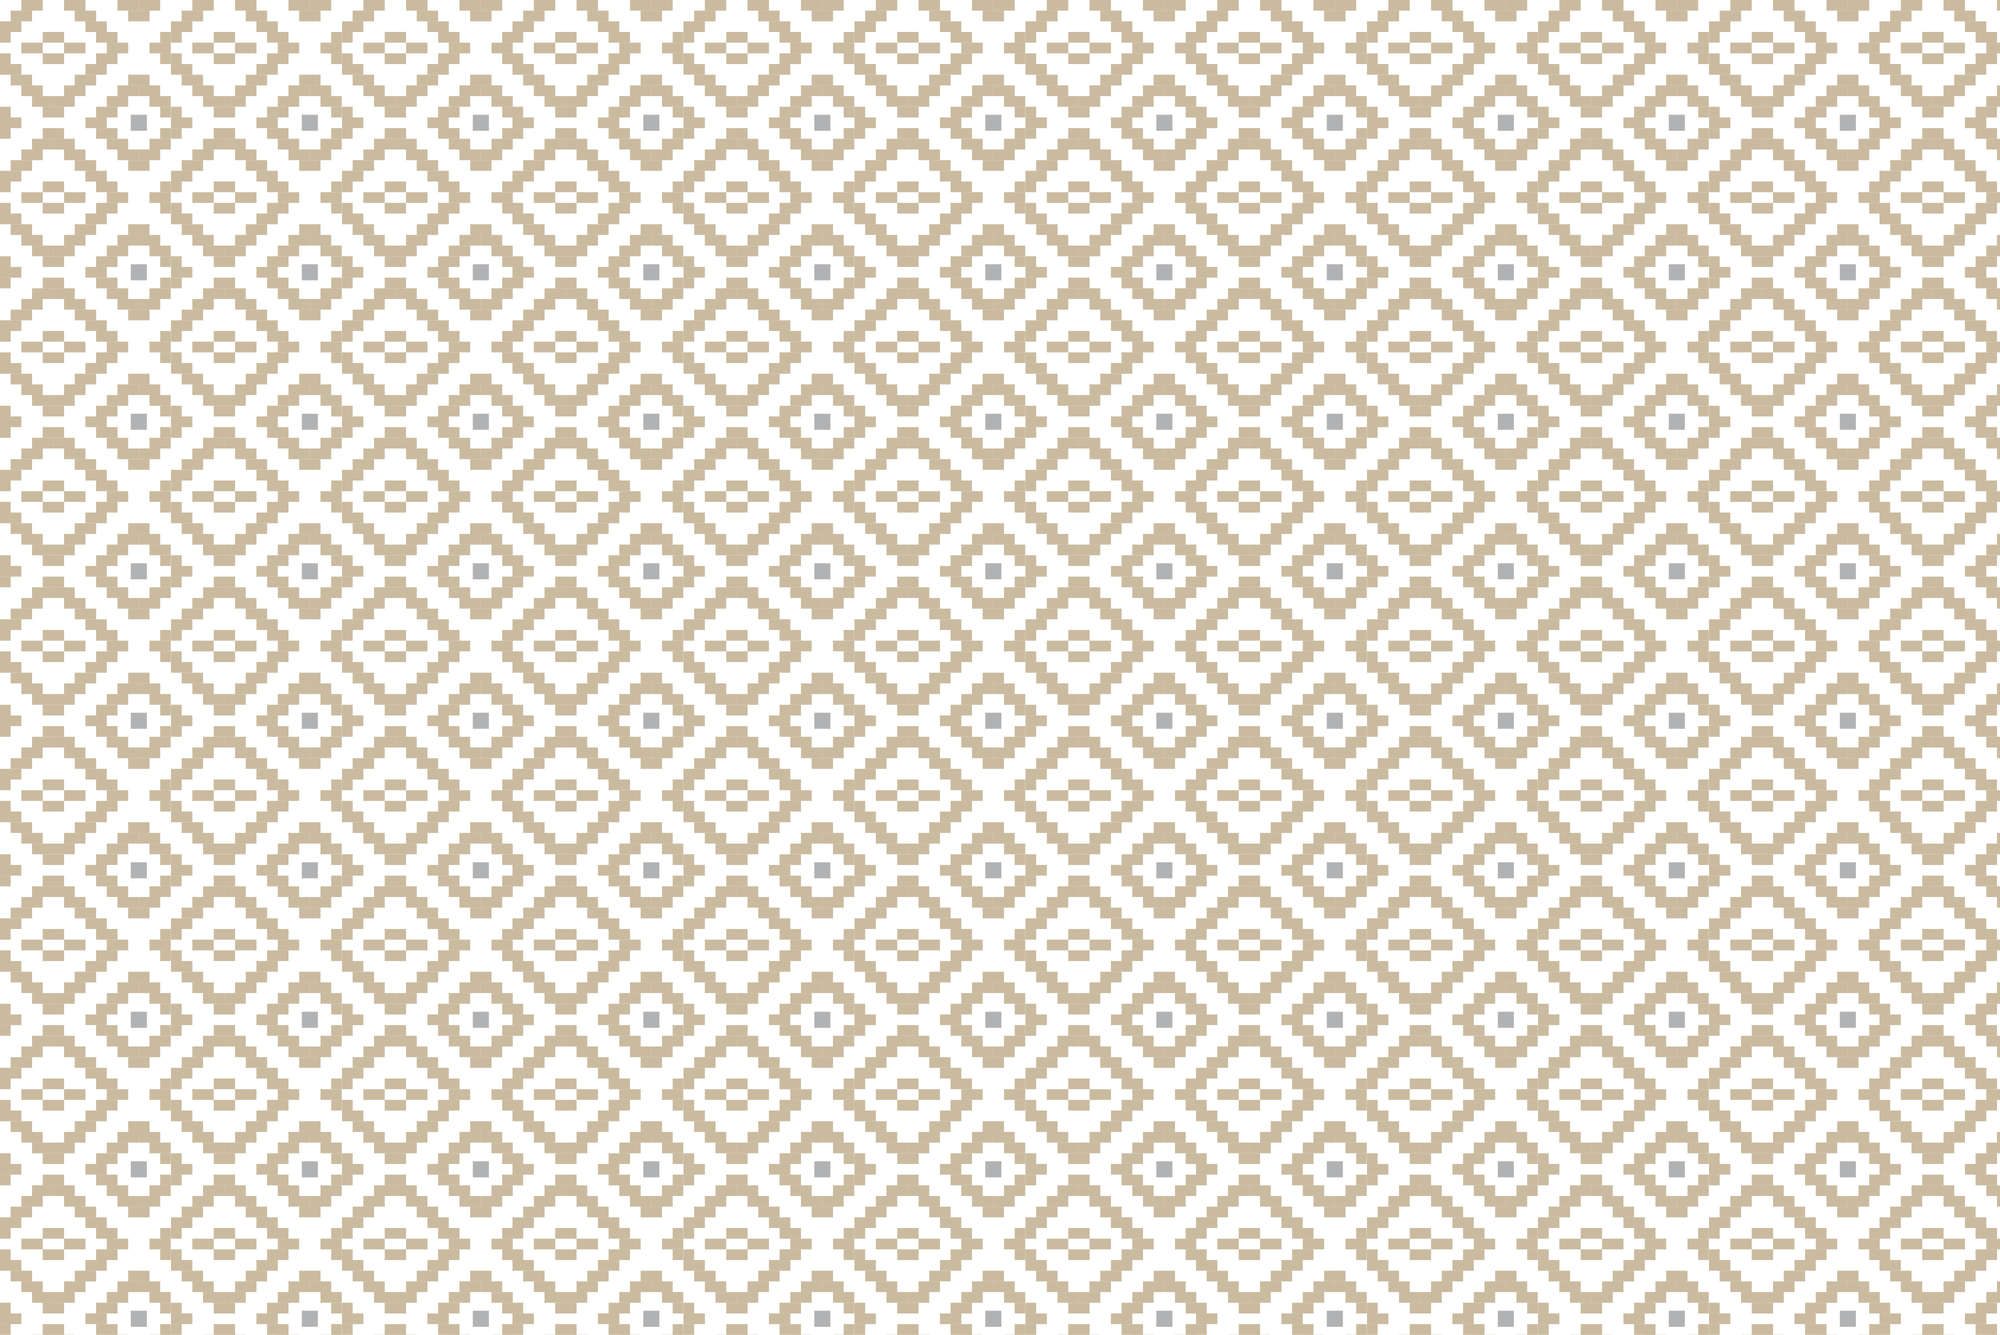             Papel pintado de diseño de pequeños cuadrados con motivos amarillos en tejido no tejido texturizado
        